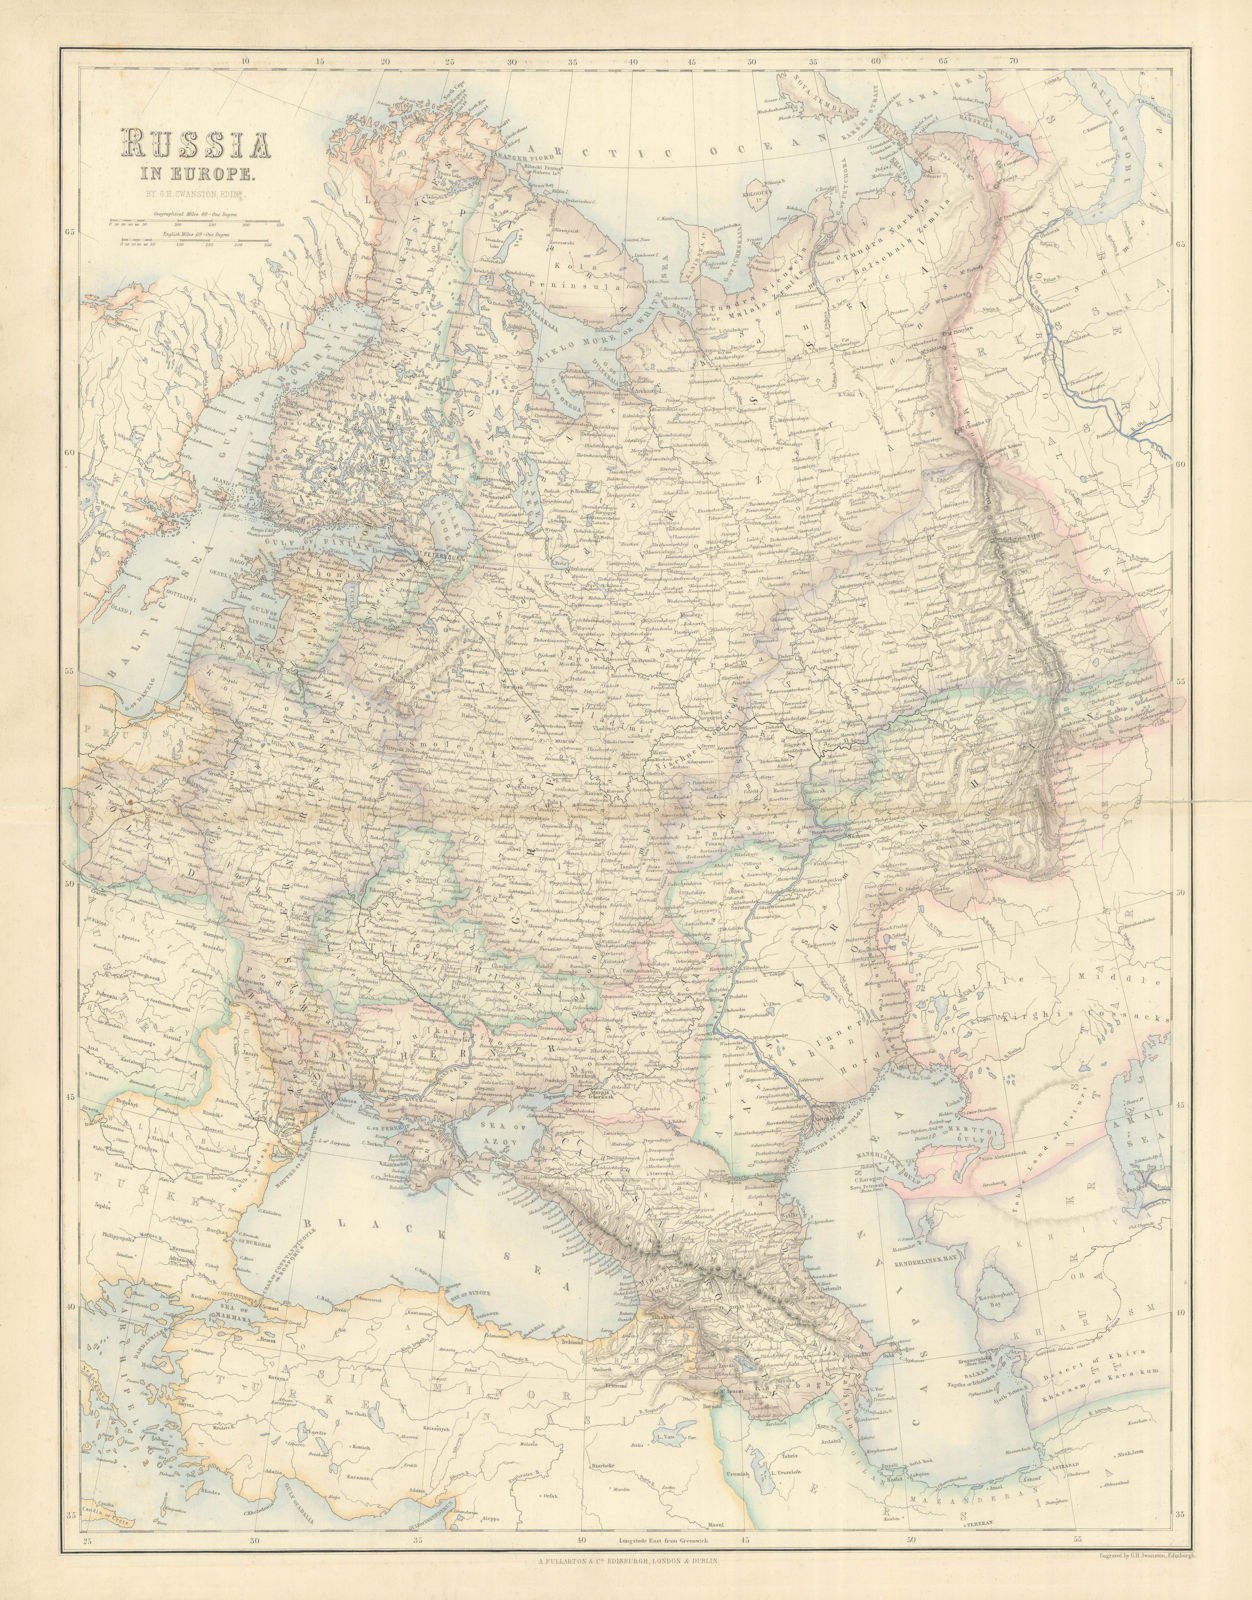 Russia in Europe. Ukraine Caucasus Finland Poland Baltics. SWANSTON 1860 map